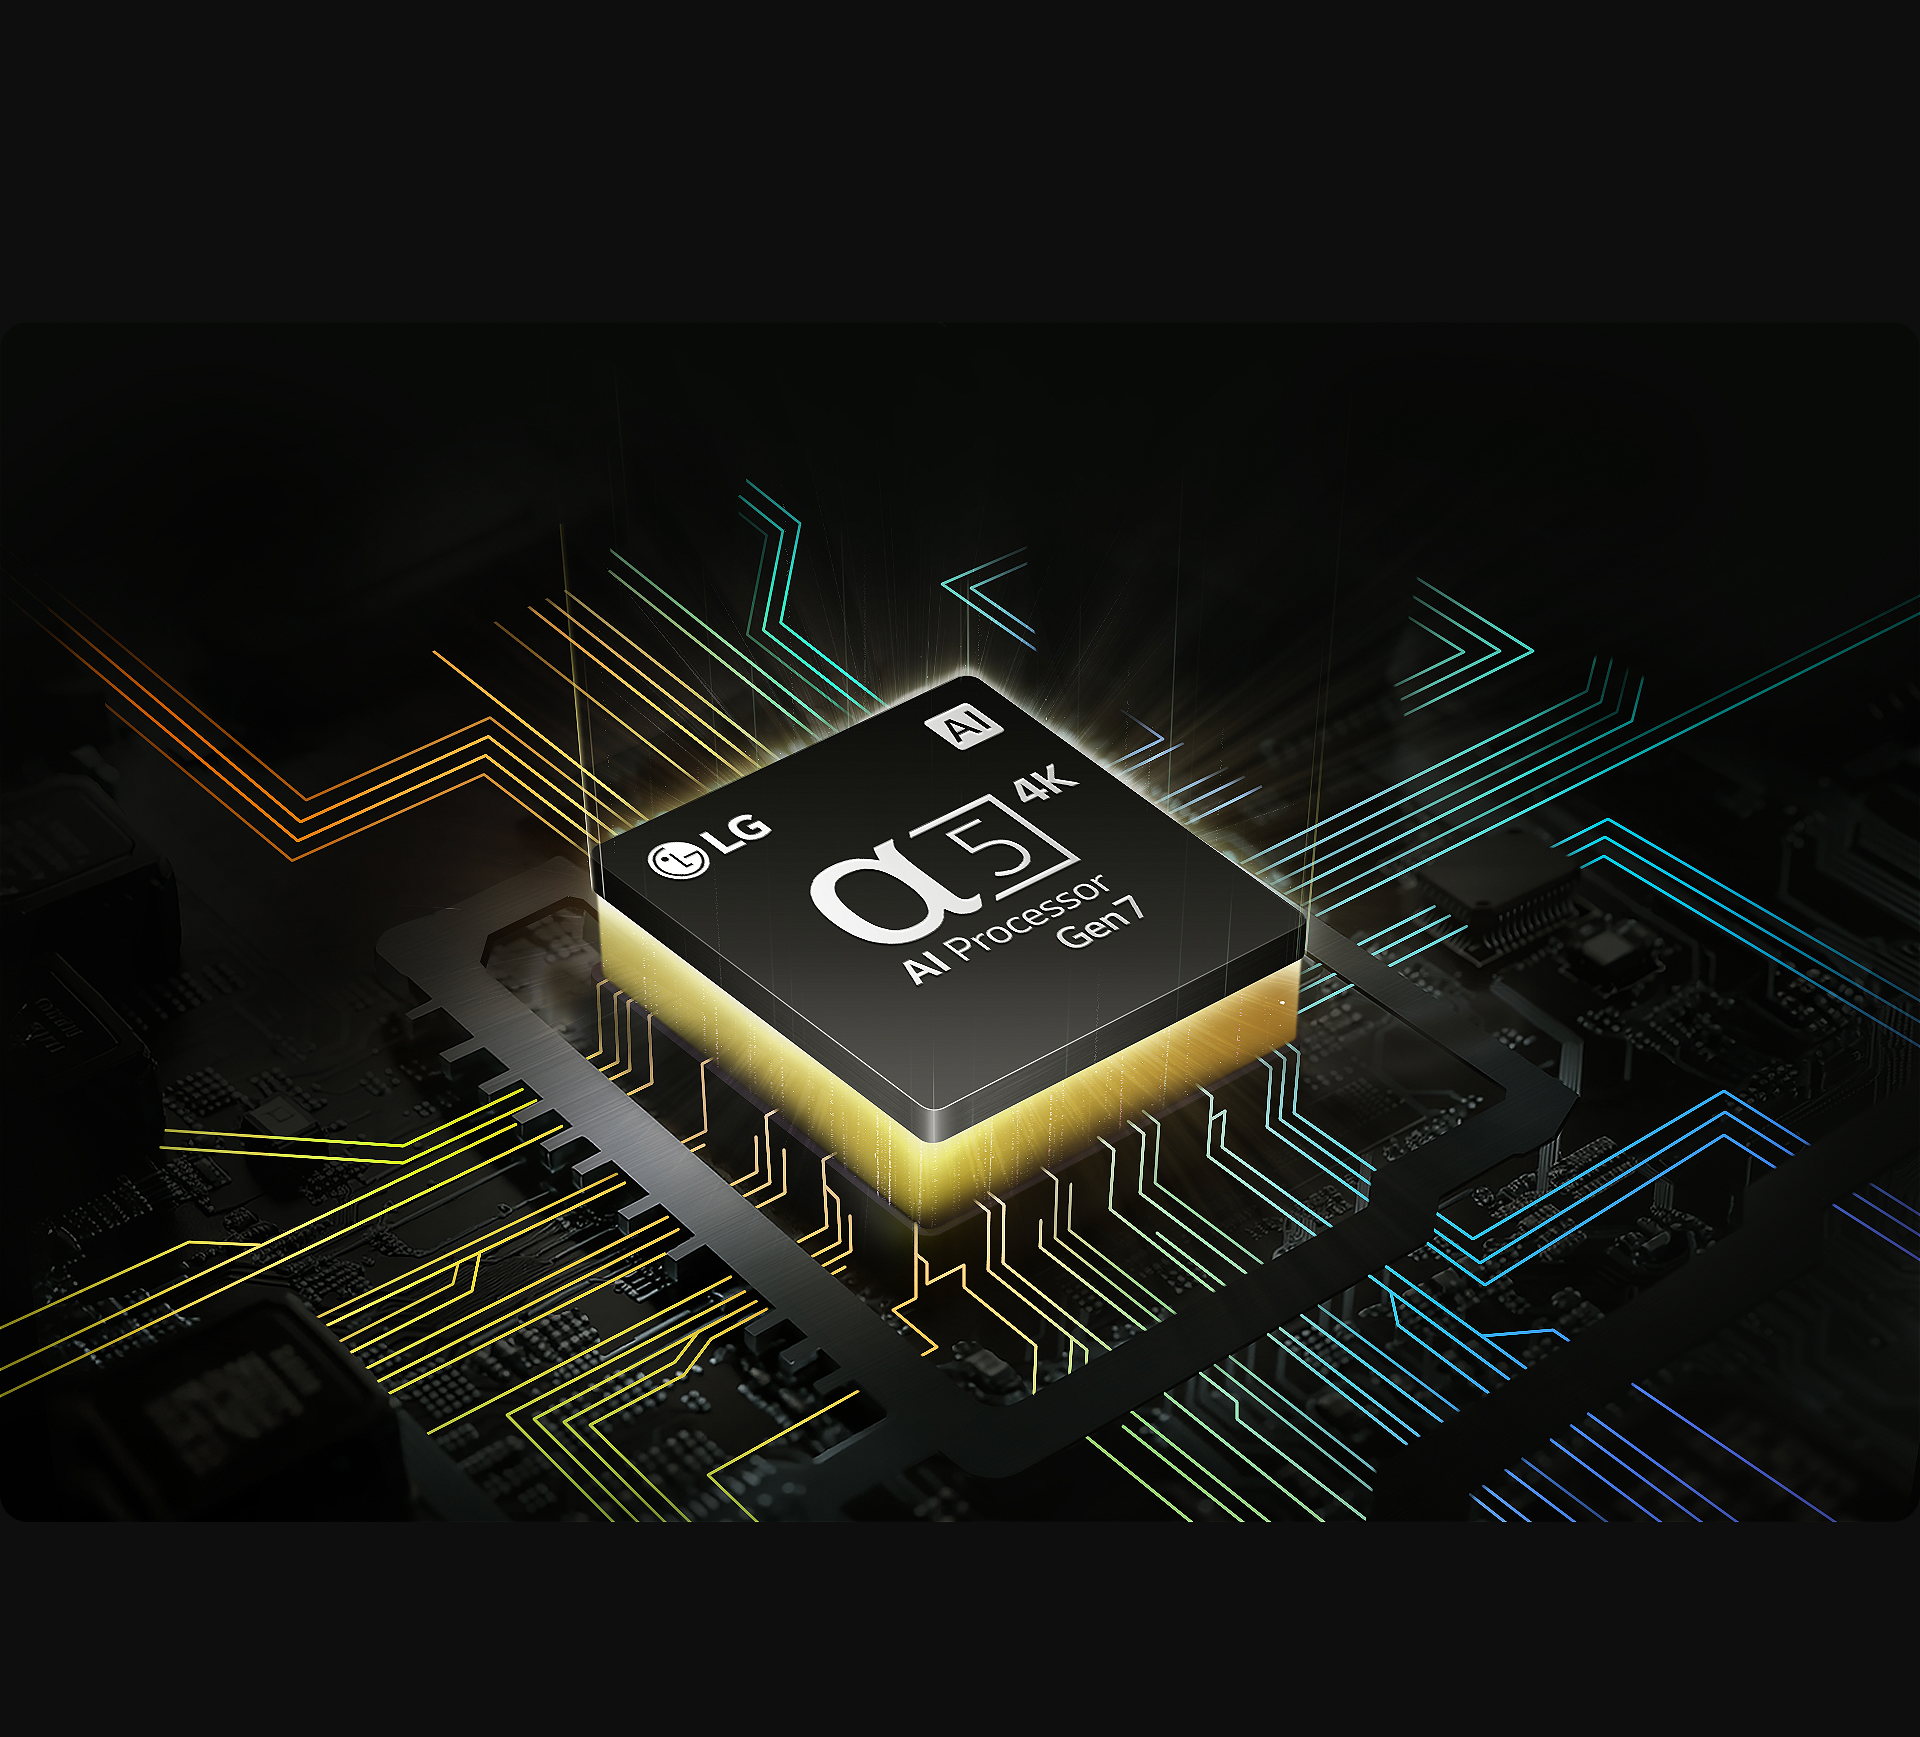 Processador alpha da LG com uma luz amarela emanando por baixo, e linhas coloridas de placa de circuito se ramificando a partir do processador.